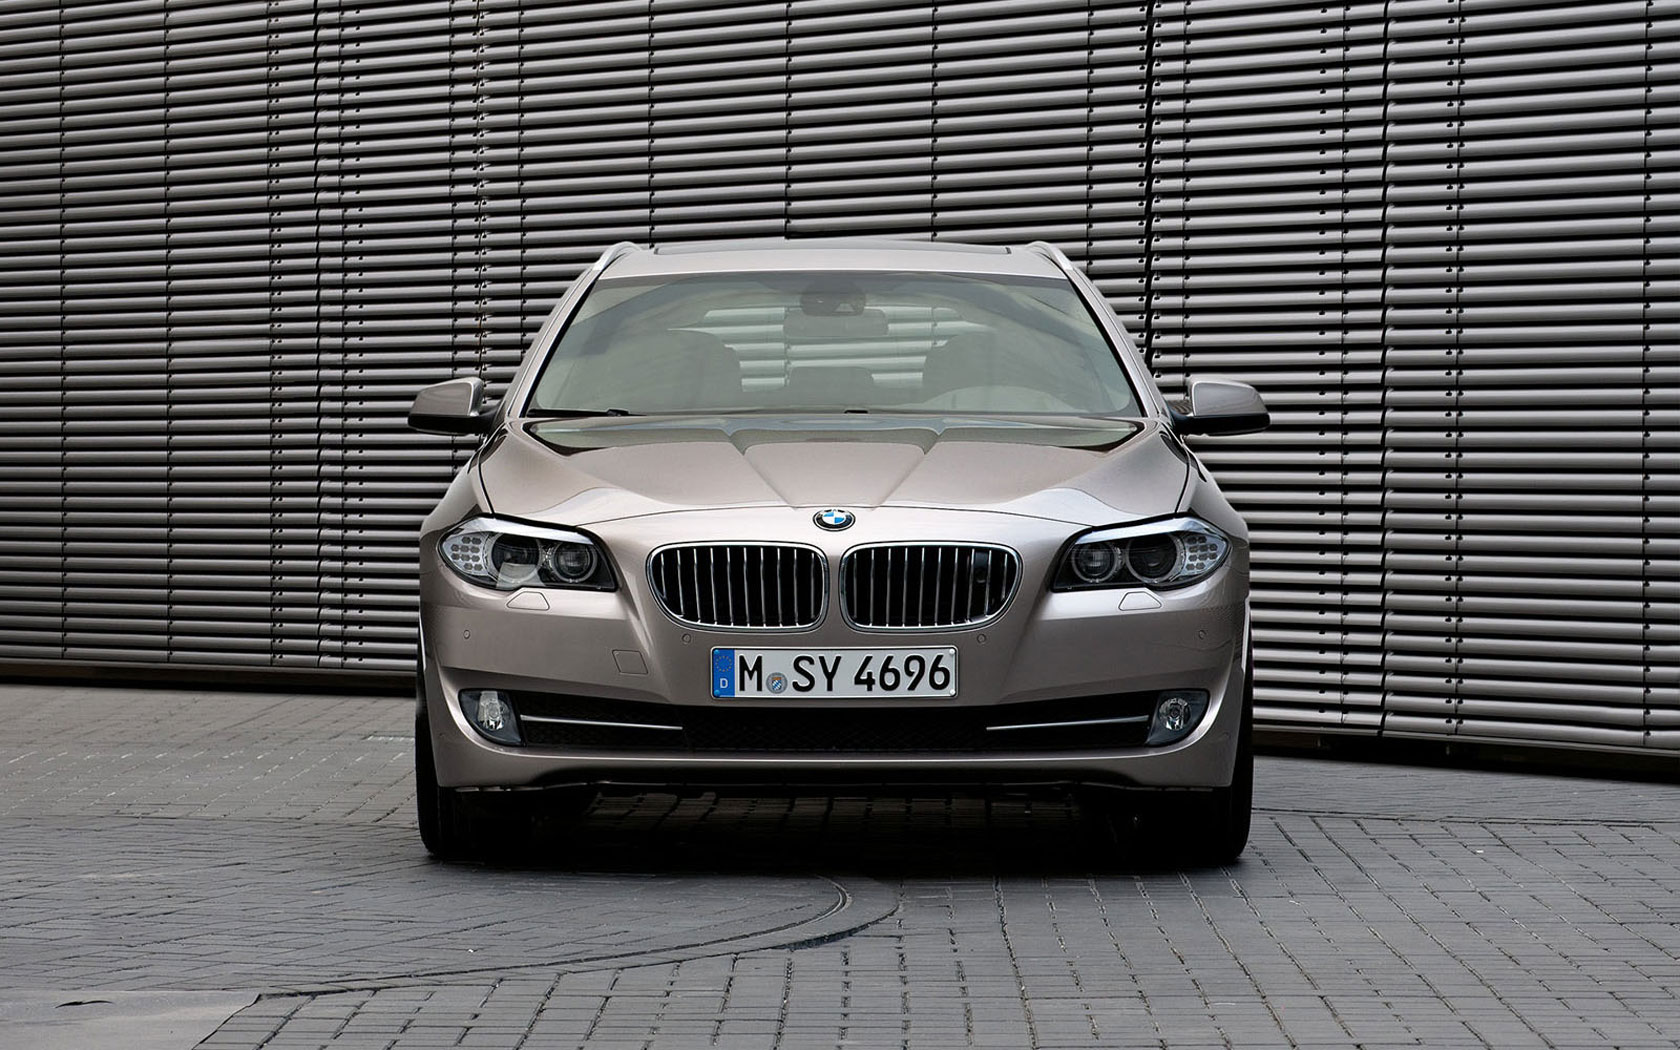  BMW 5-series Touring (2010-2013)